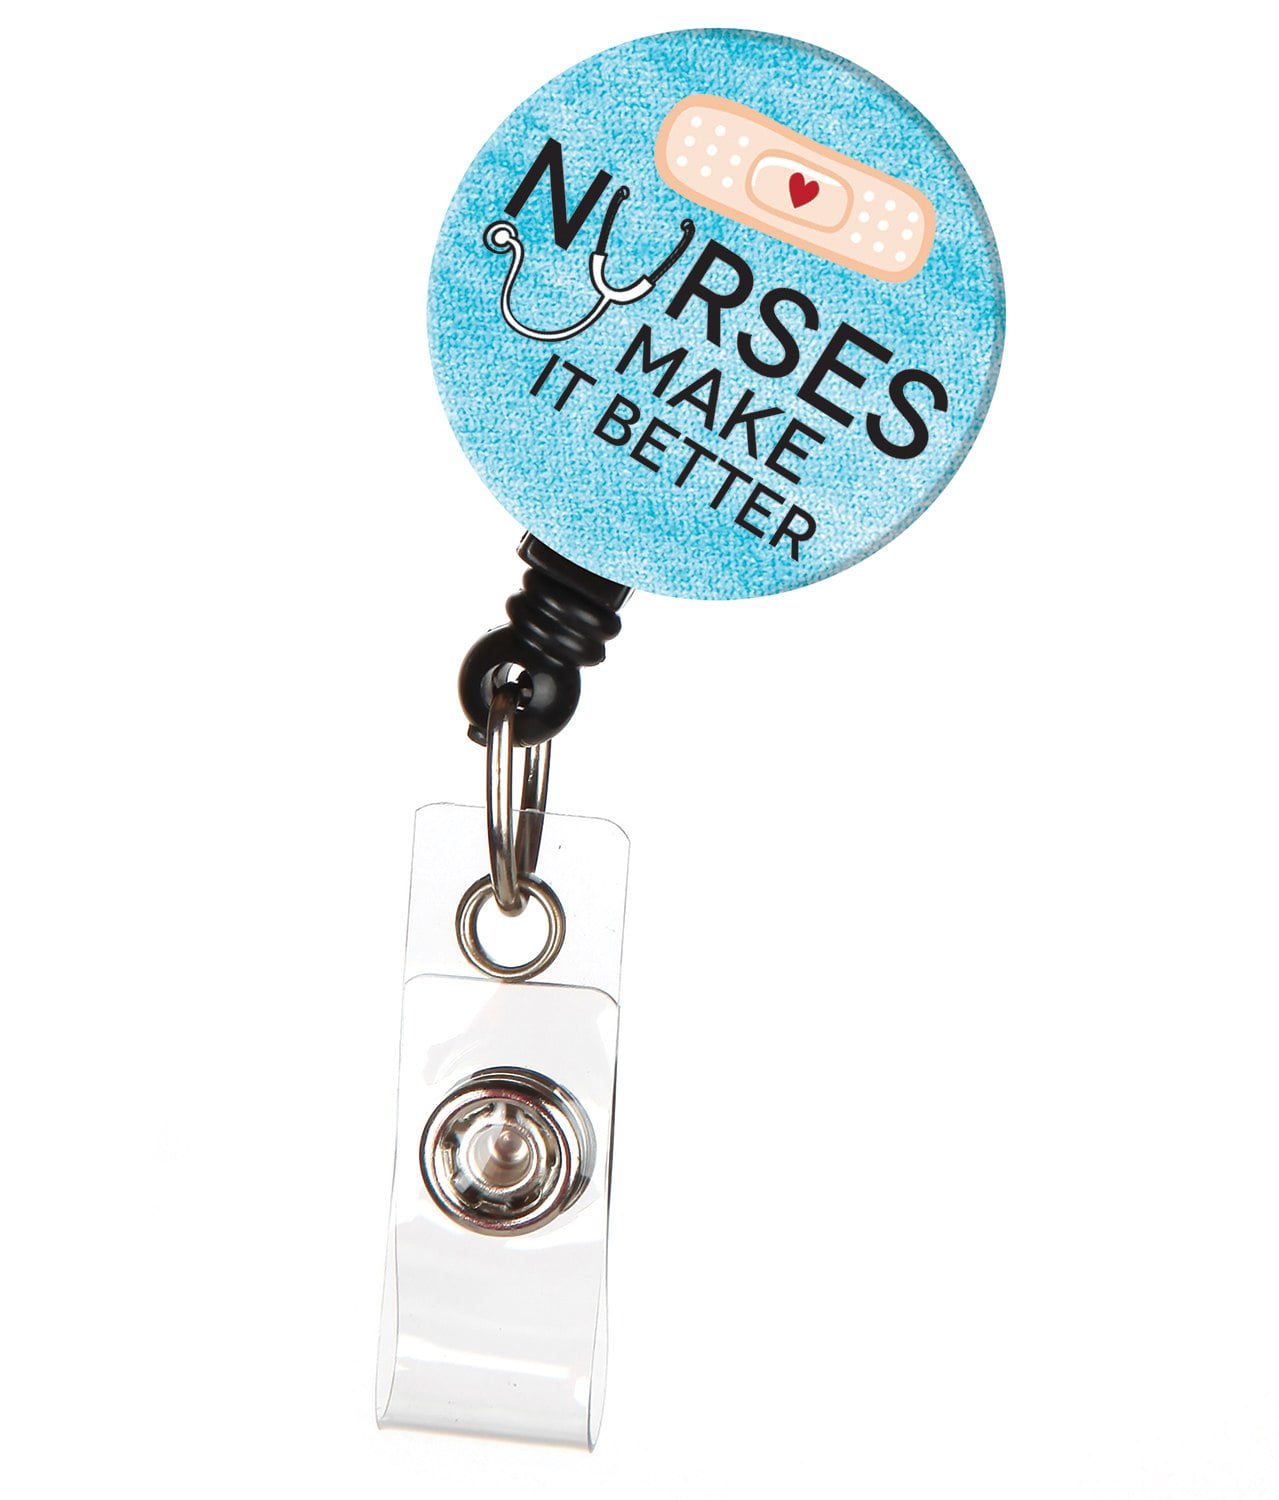 Nurses Make It Better Badge Reel - Walmart.com - Walmart.com